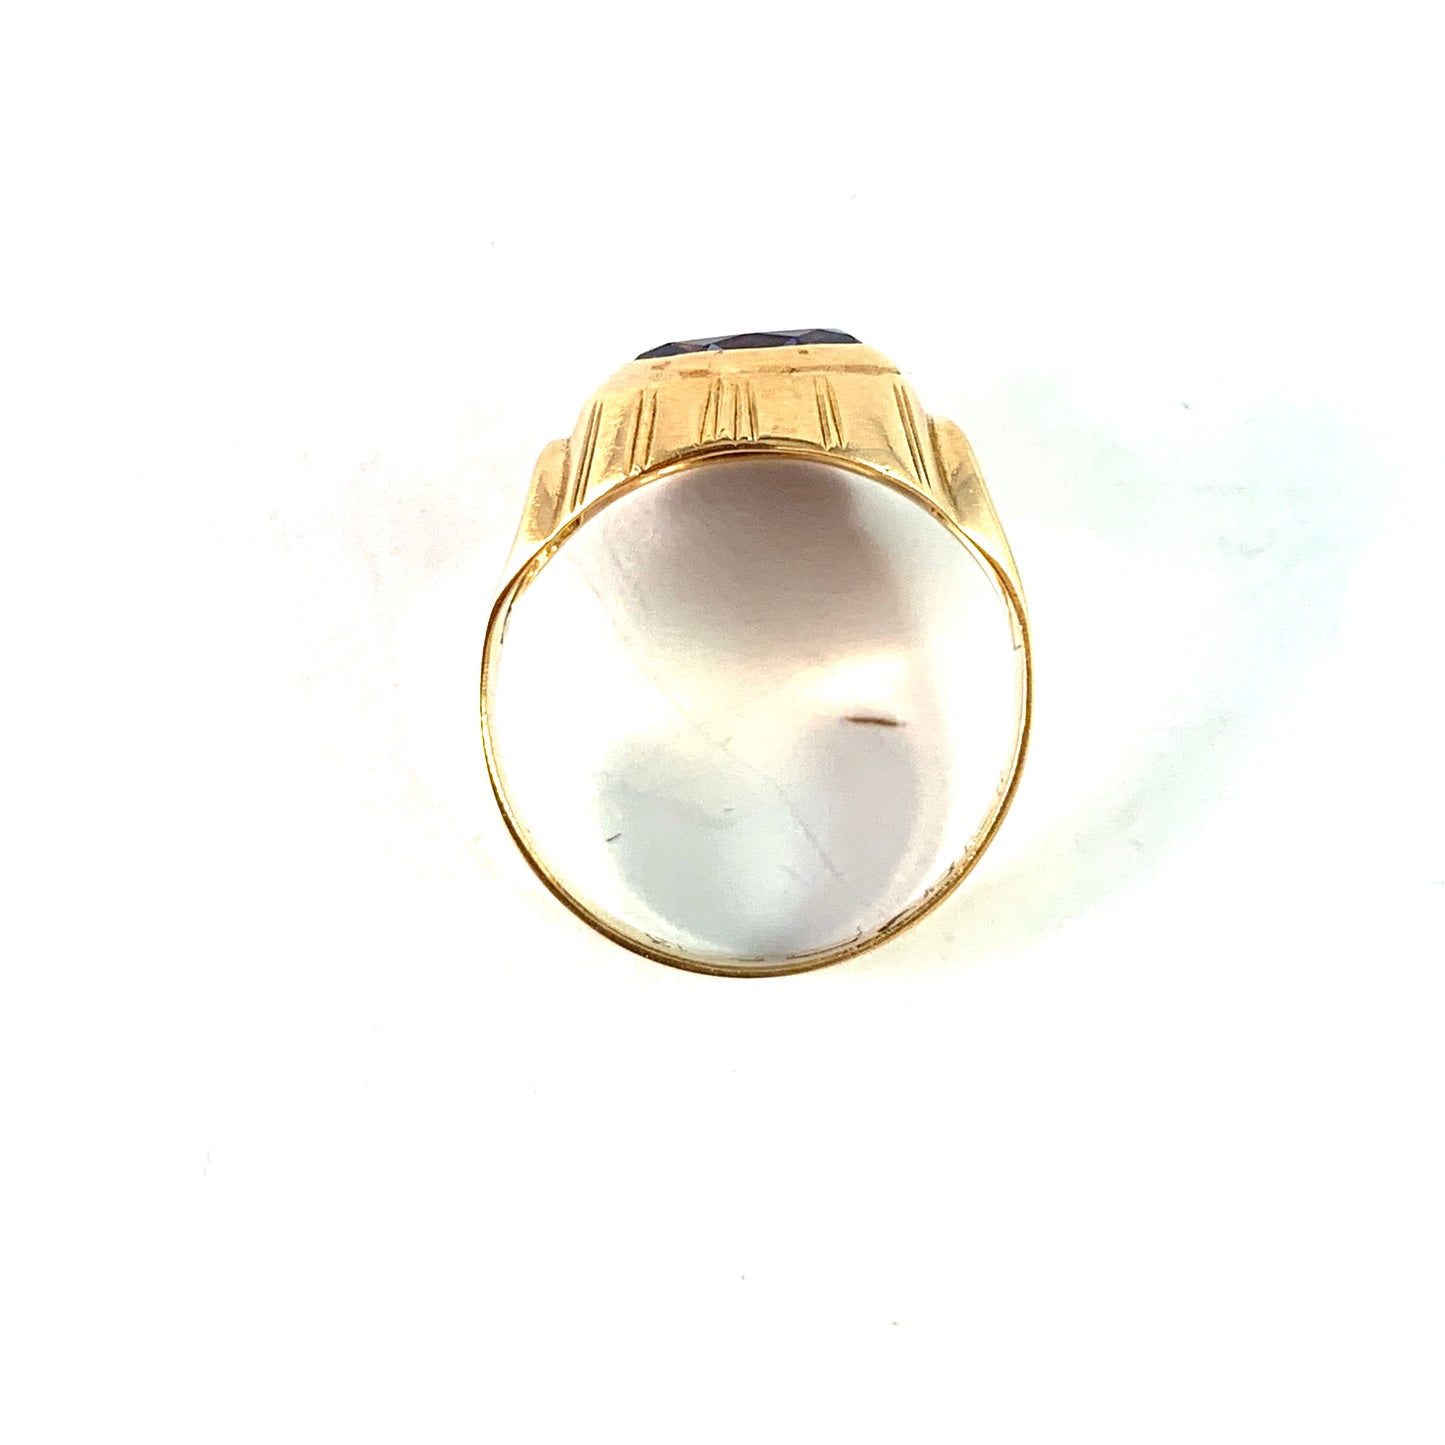 Bengt Hallberg. Sweden 1950s. Vintage 18k Gold Synthetic Sapphire Ring.